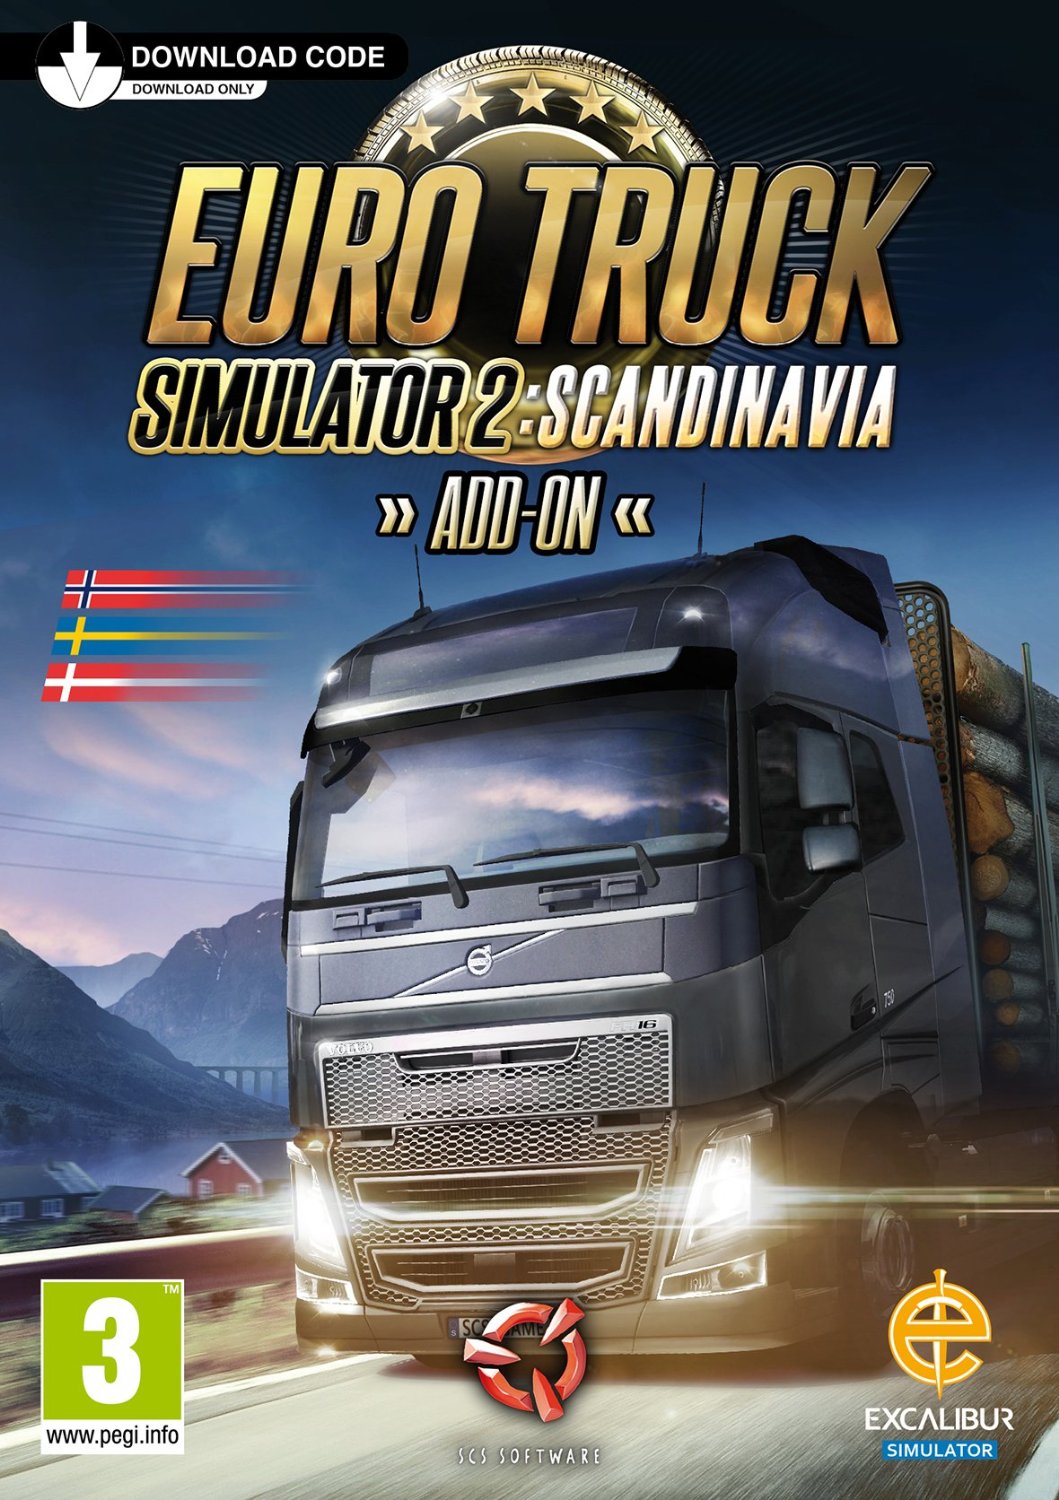 https://www.serialgaming.co.uk/wp-content/uploads/2022/12/euro-truck-simulator-2-scandinavia_cover_original.jpg